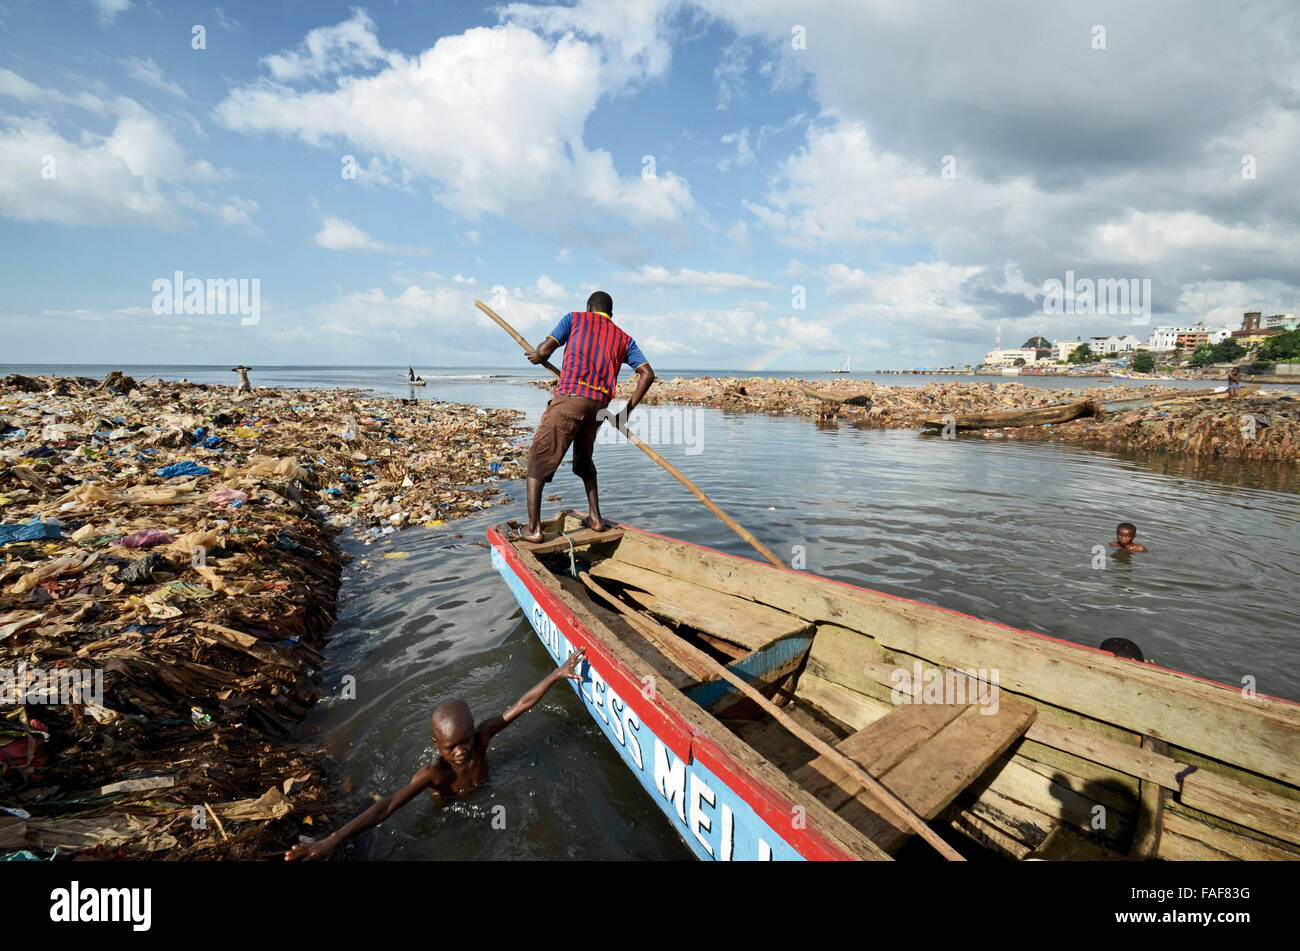 Man on boat in a rubbish dump in Kroo Bay, Freetown, Sierra Leone. Stock Photo